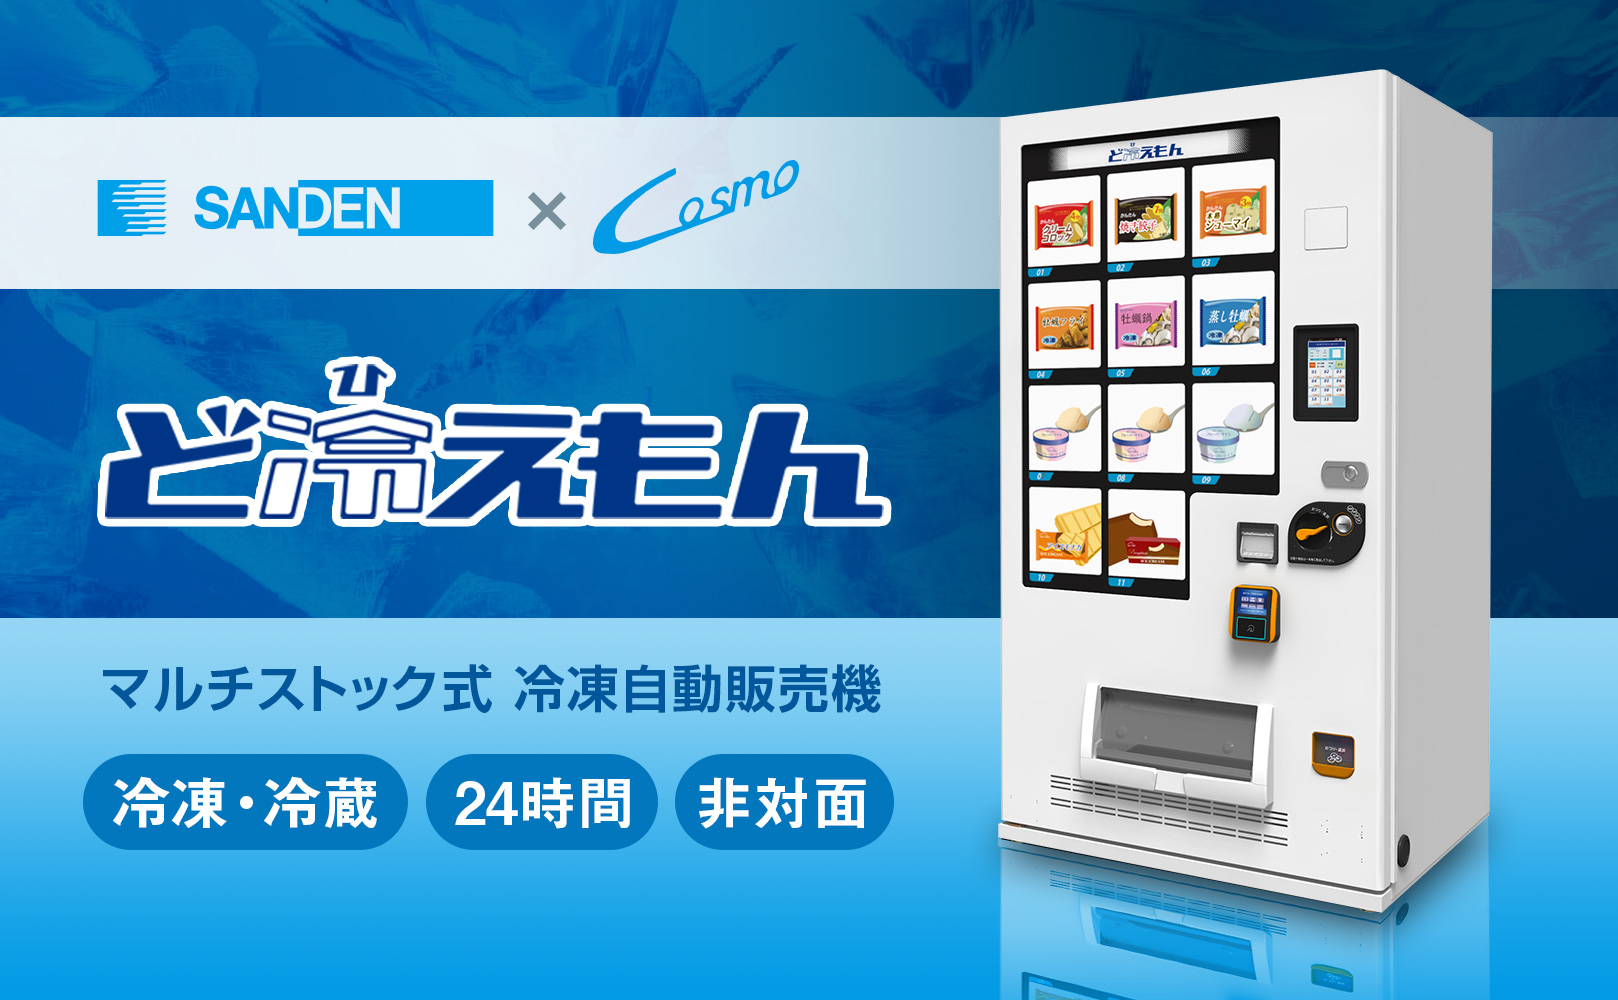 冷凍自販機 – SANDEN - コスモ機器株式会社